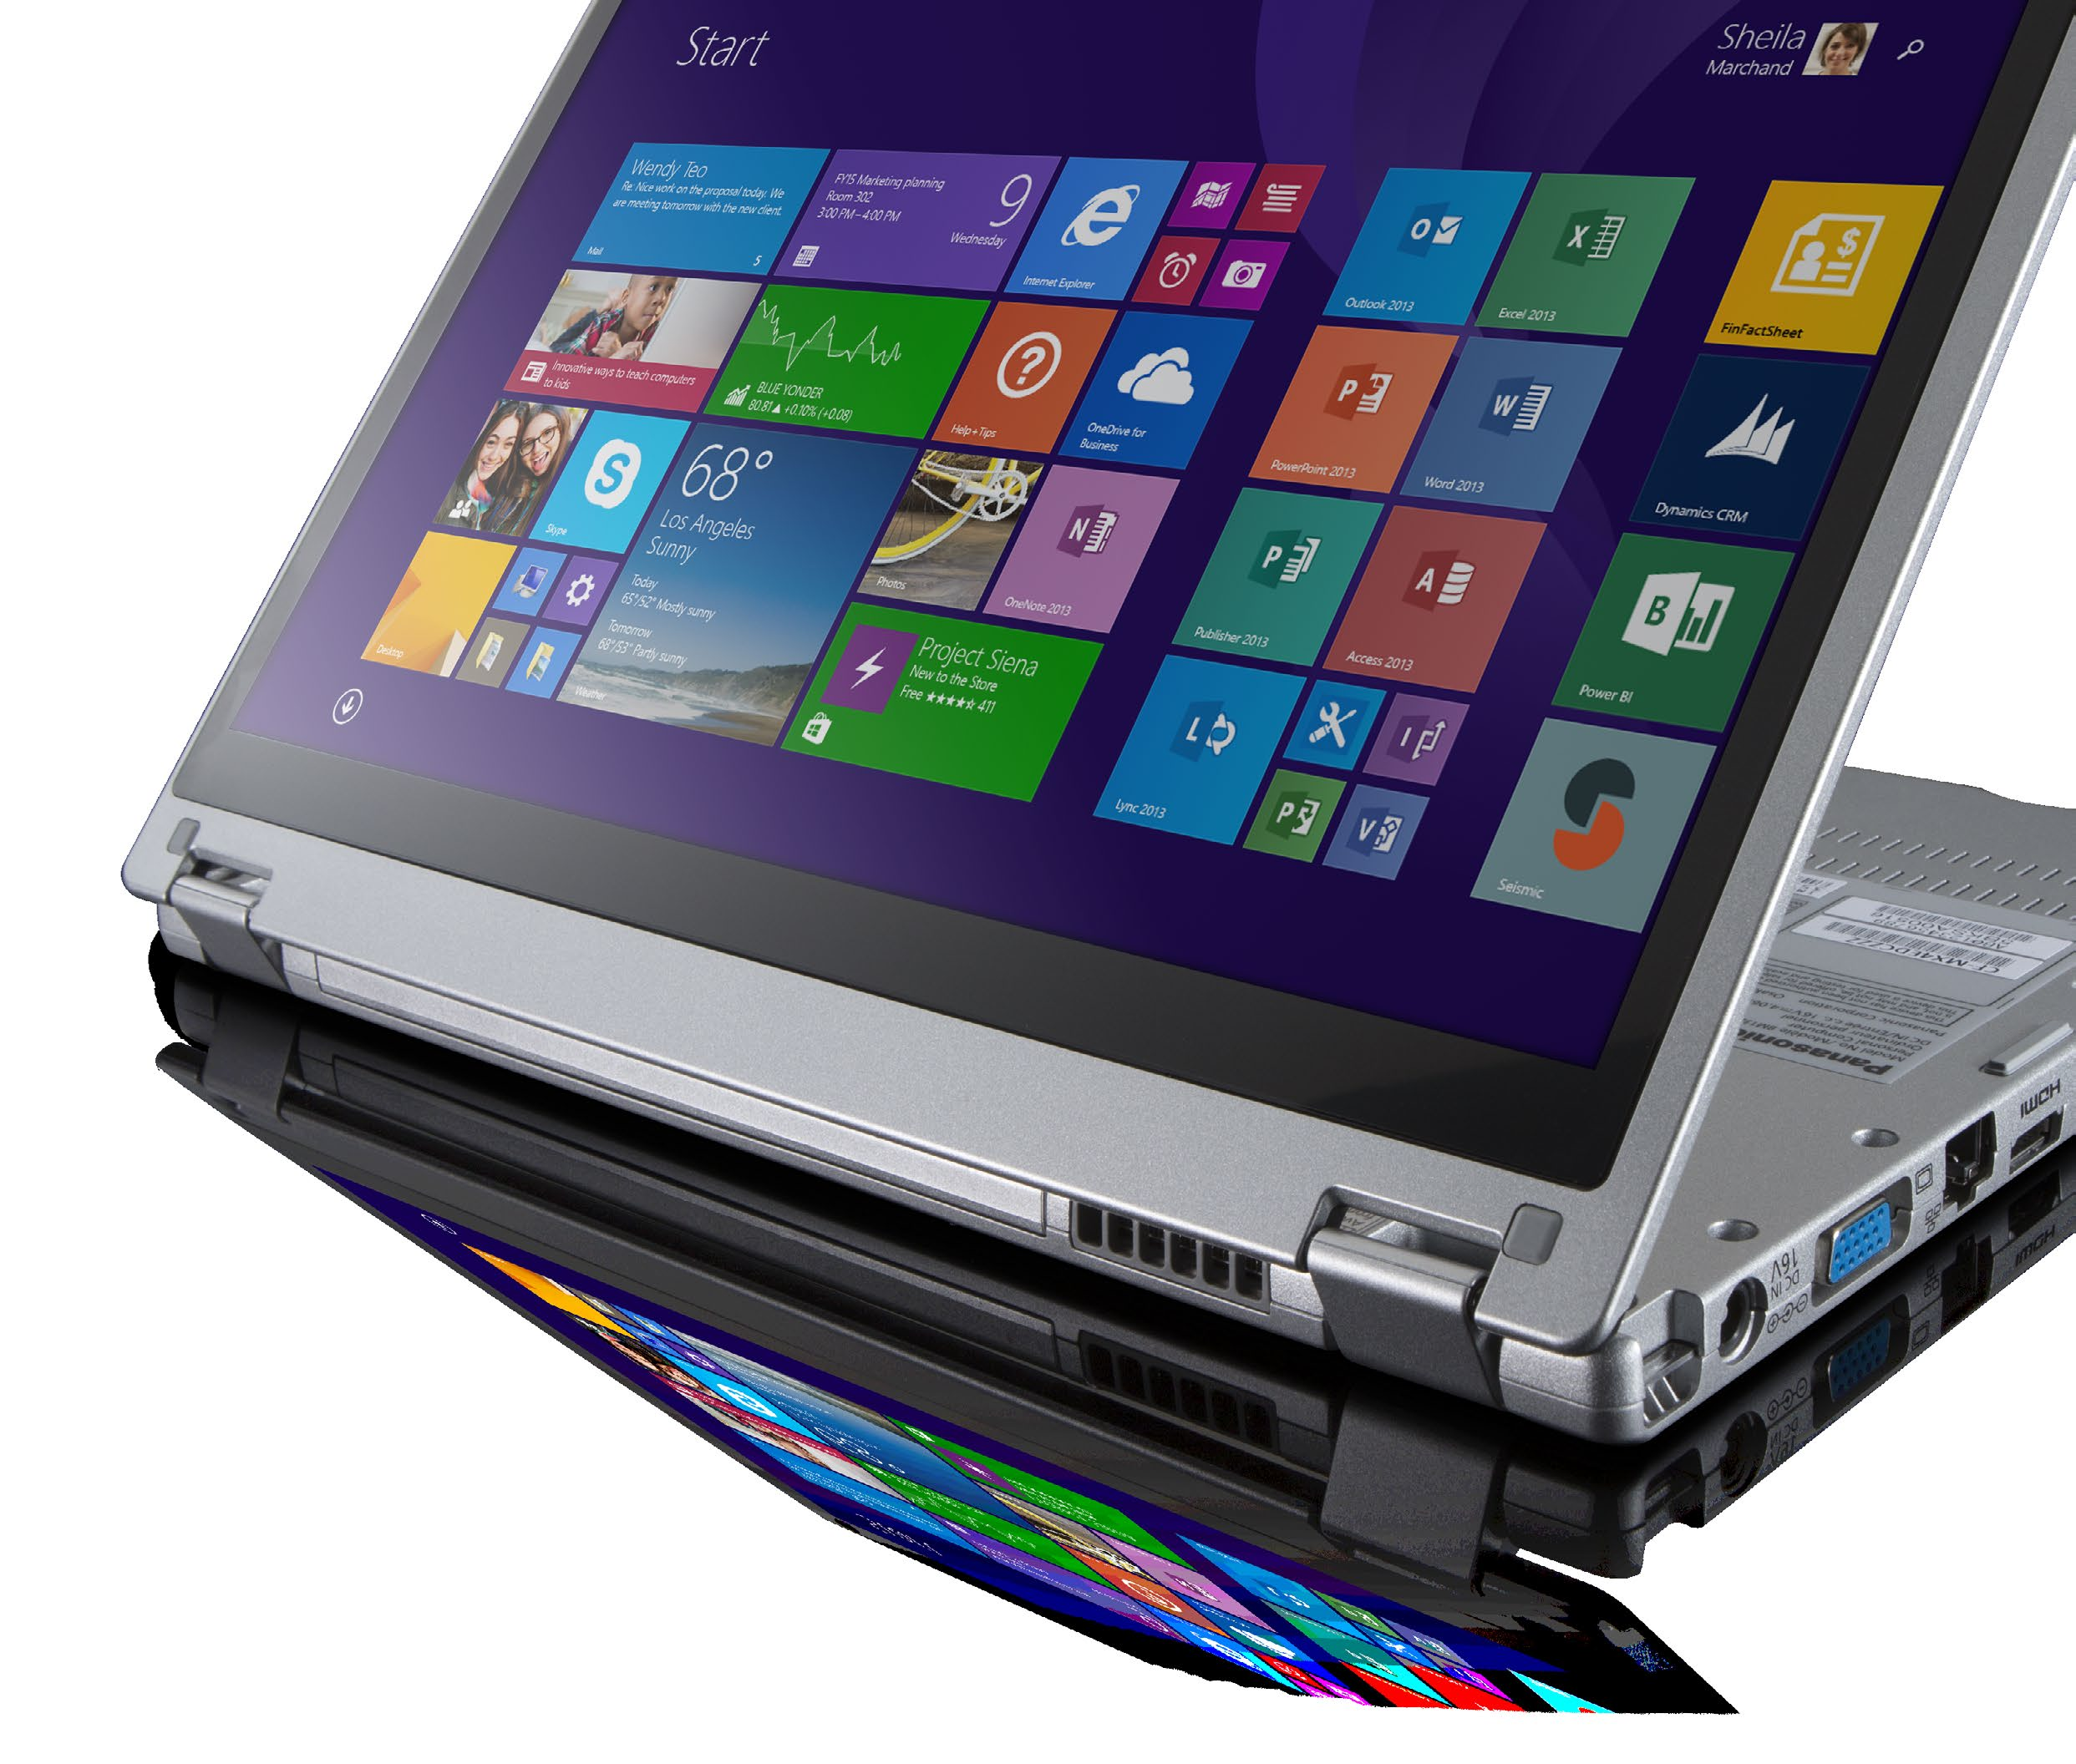 Hybride apparaten zijn een aantrekkelijke combinatie van de sterke eigenschappen van een tablet met de voordelen van een laptop.